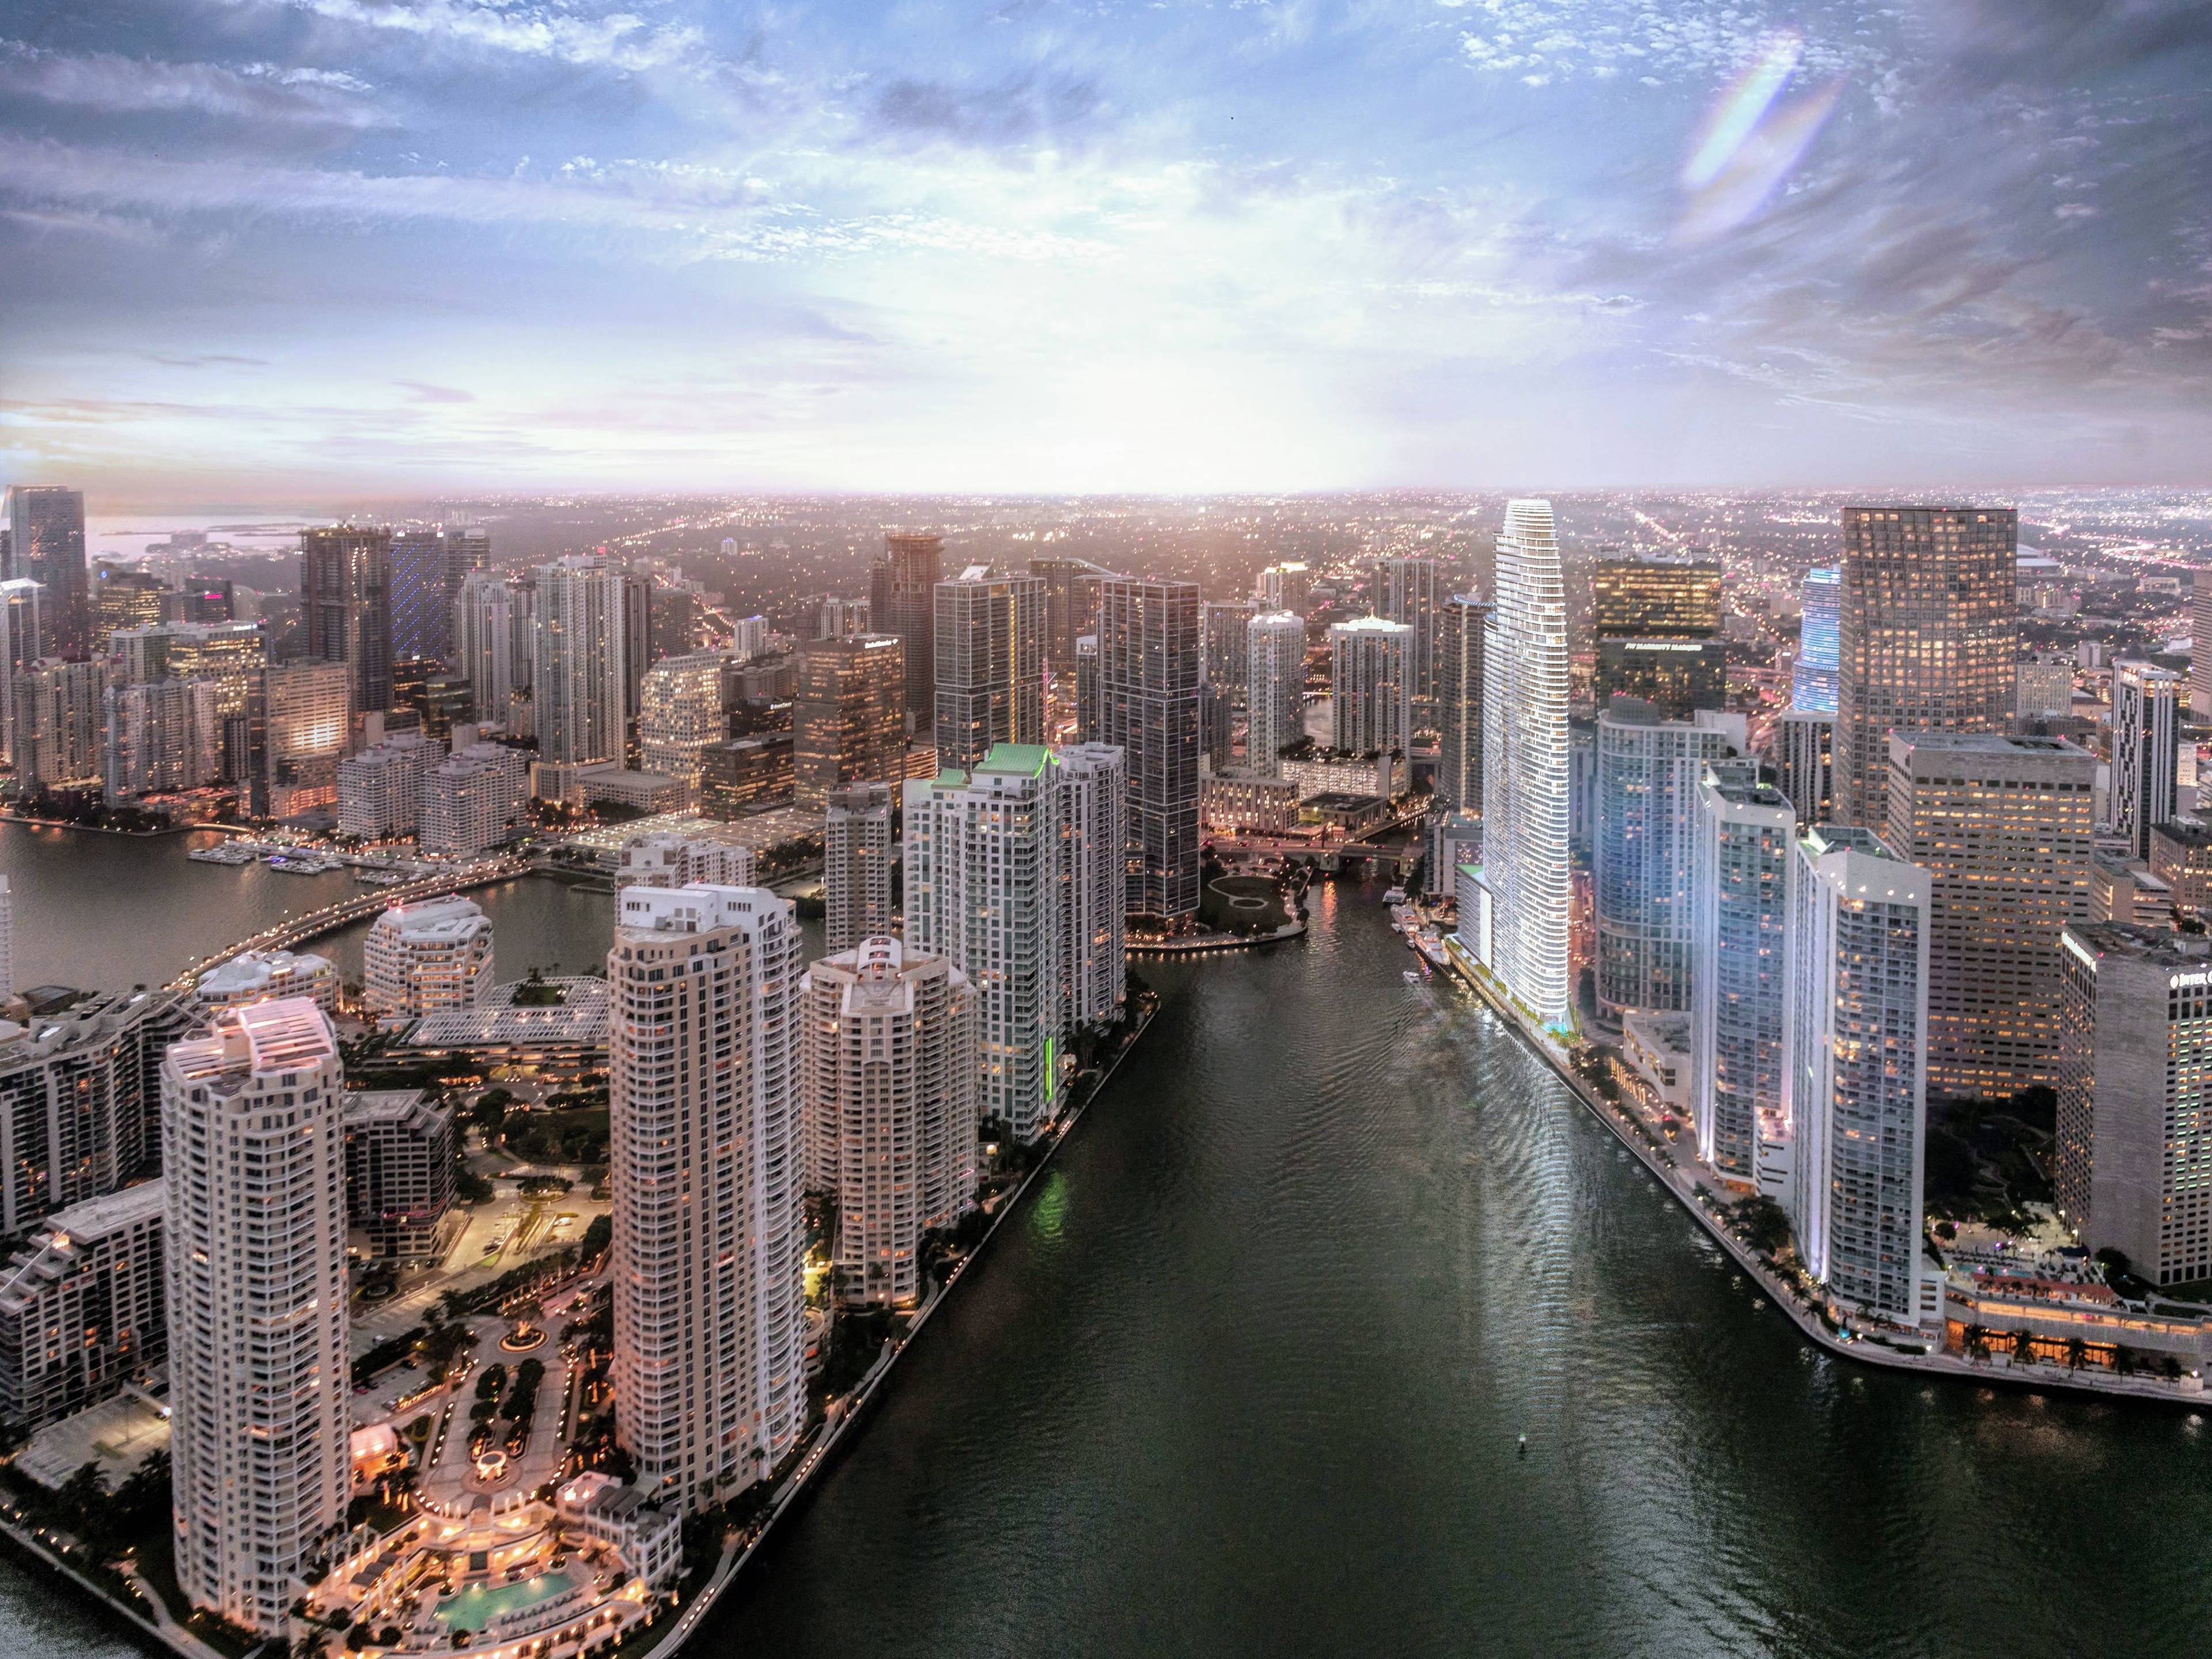 The Aston Martin ResidencesI Downtown Miami Luxury ApartmentsI Waterfront